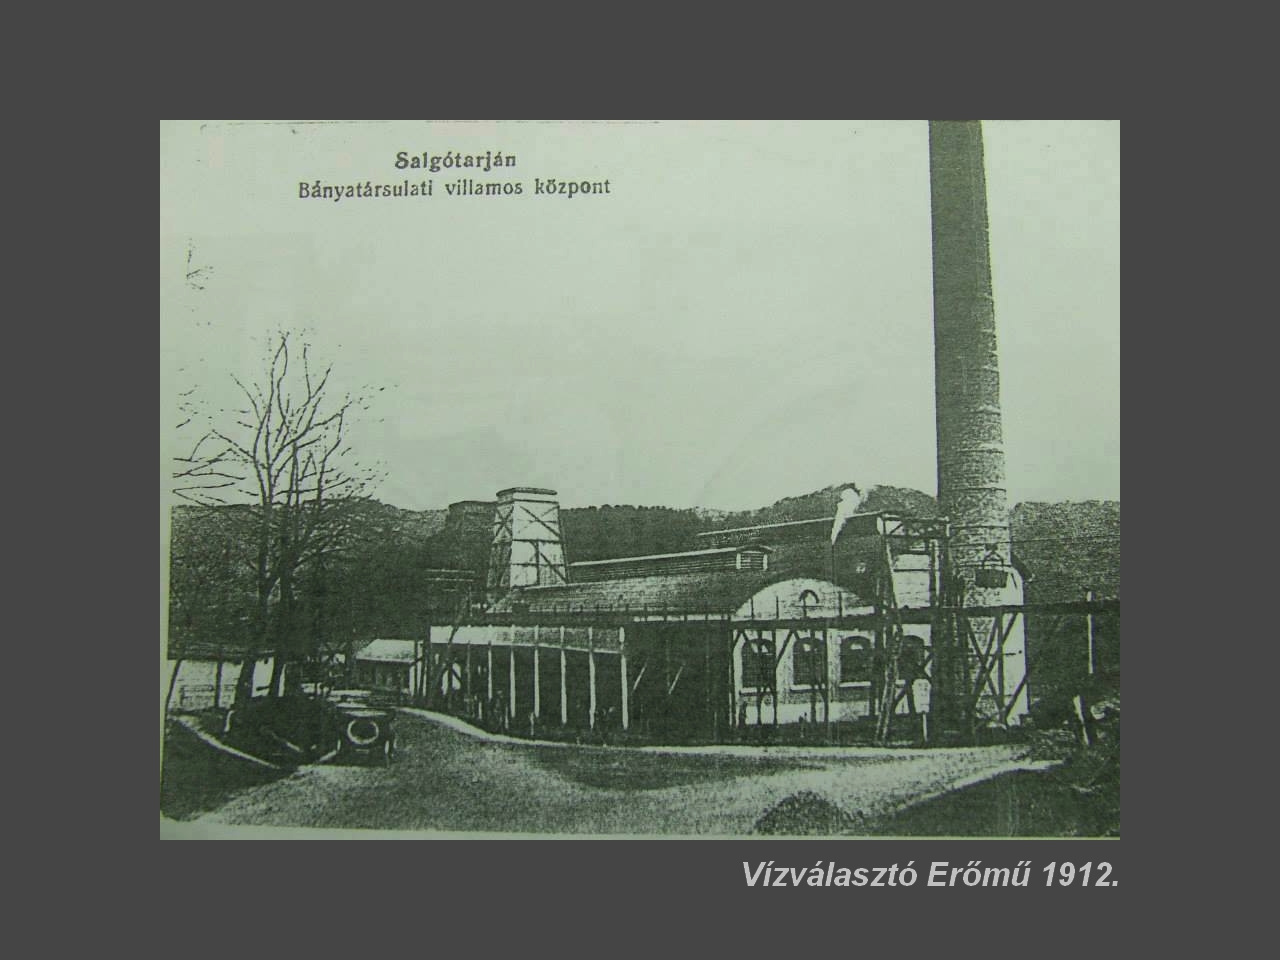 Salgótarján régen, Vízválasztói Erőmű 1912.